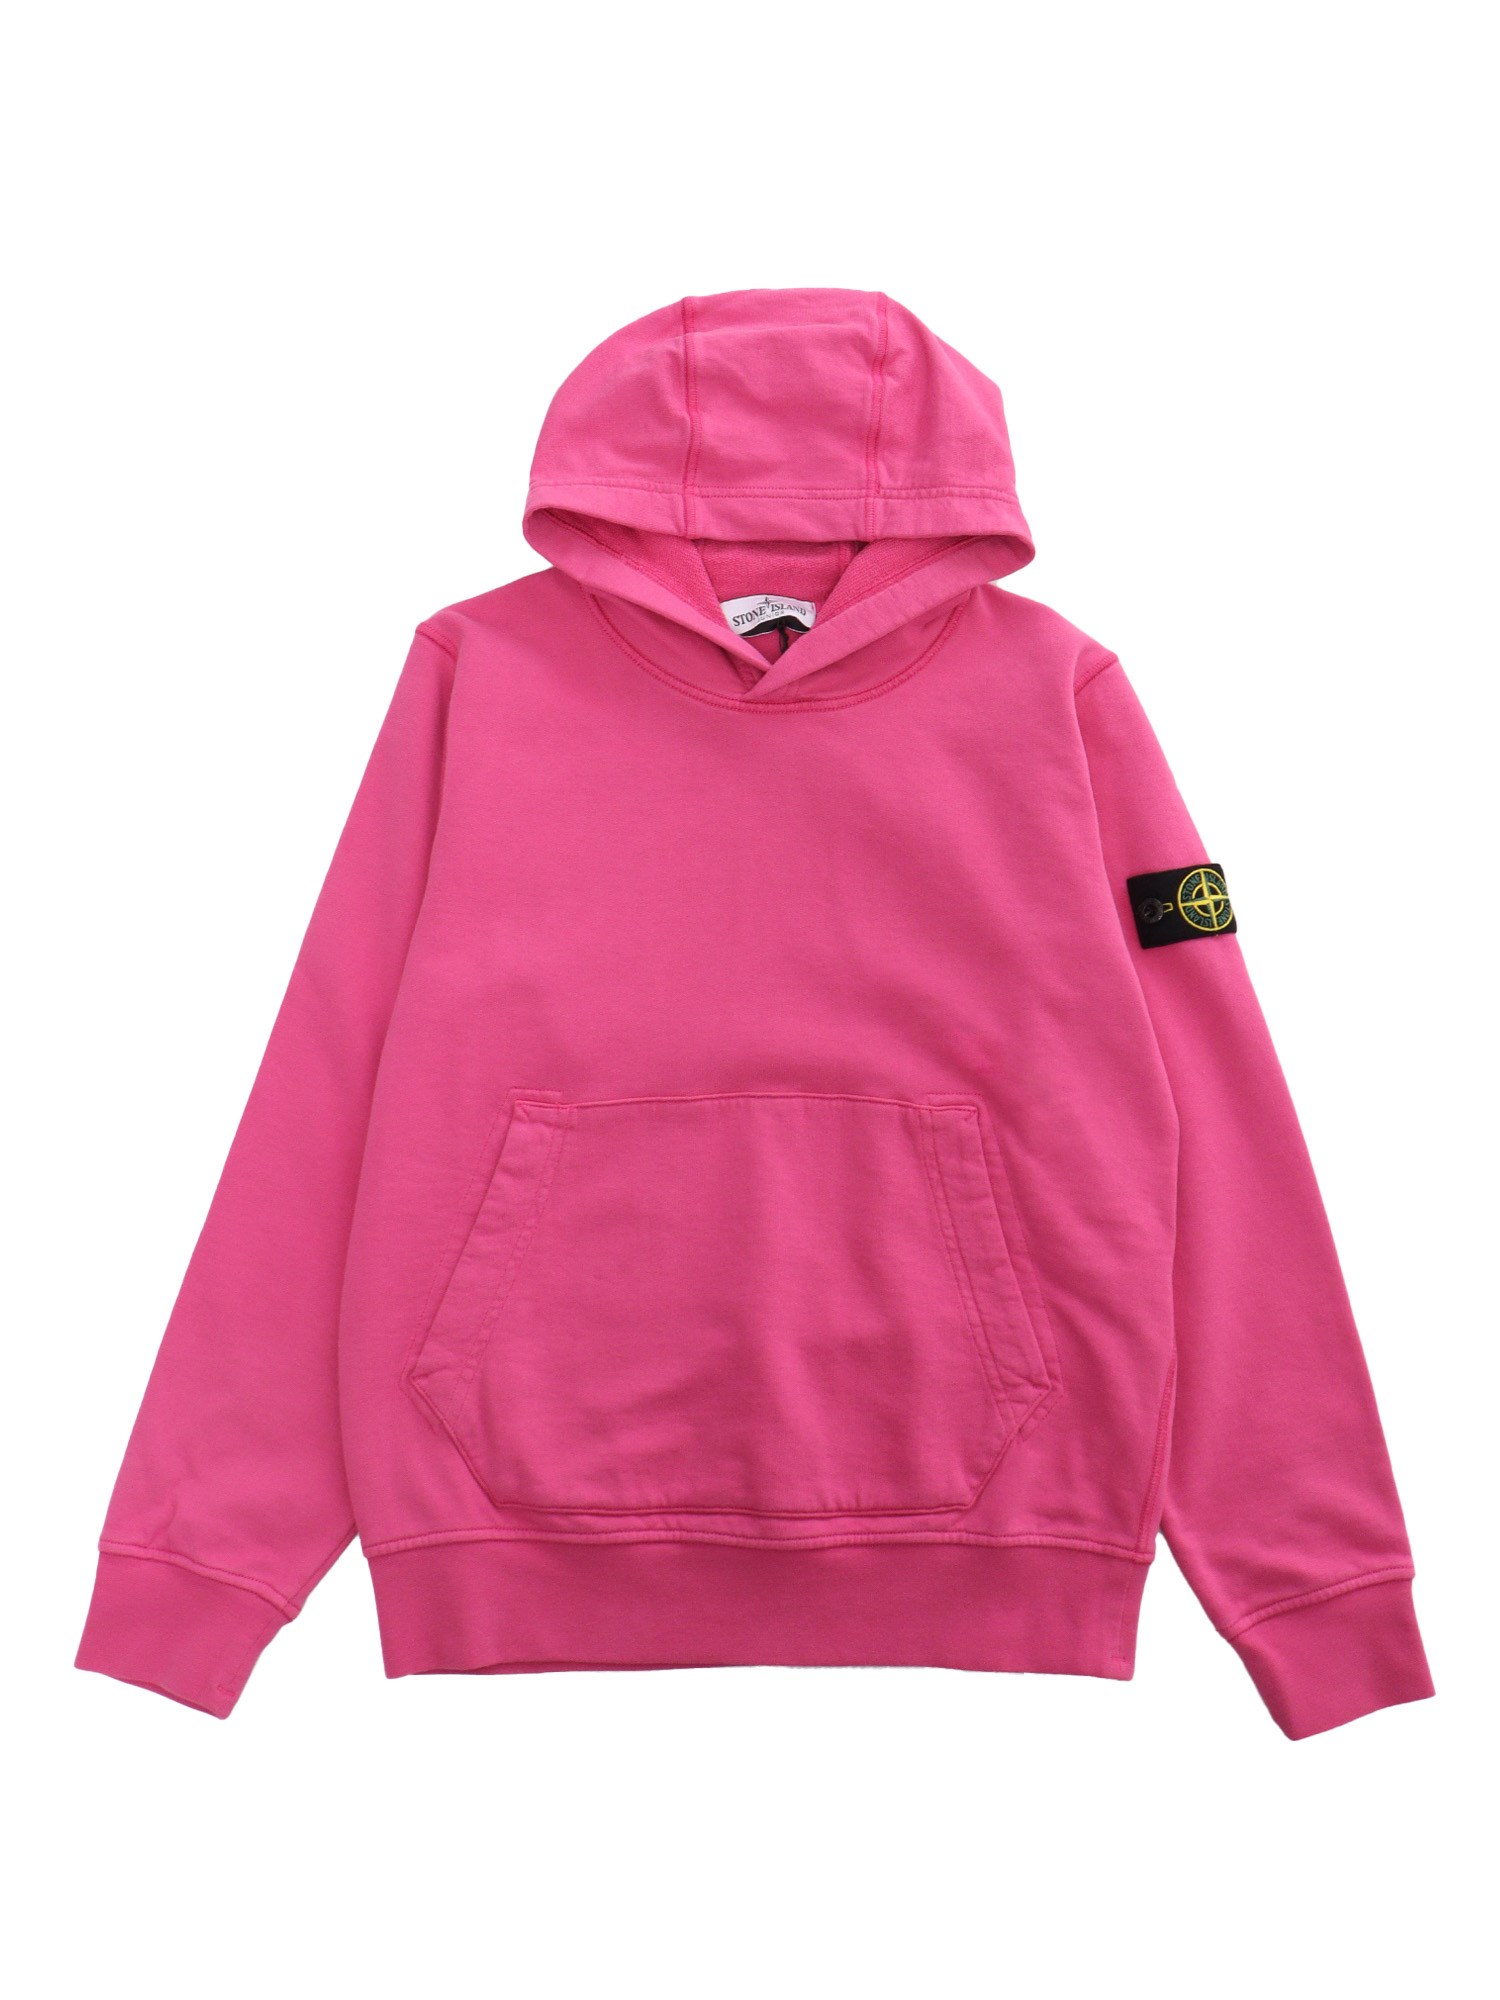 Stone Island Pink Hoodied Sweatshirt